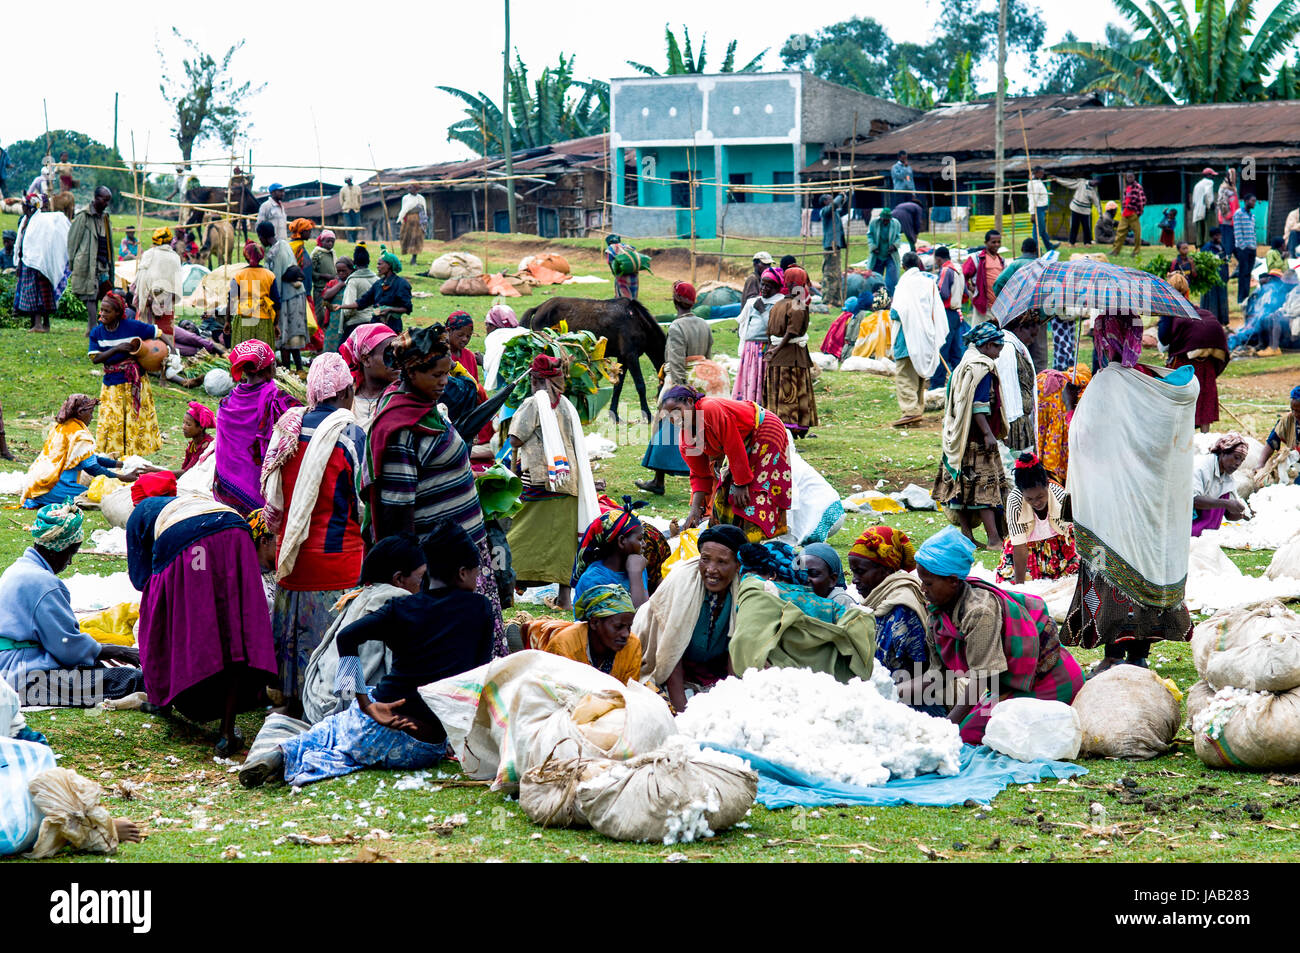 Dorze village market scene, near Arba Minch, Ethiopia Stock Photo